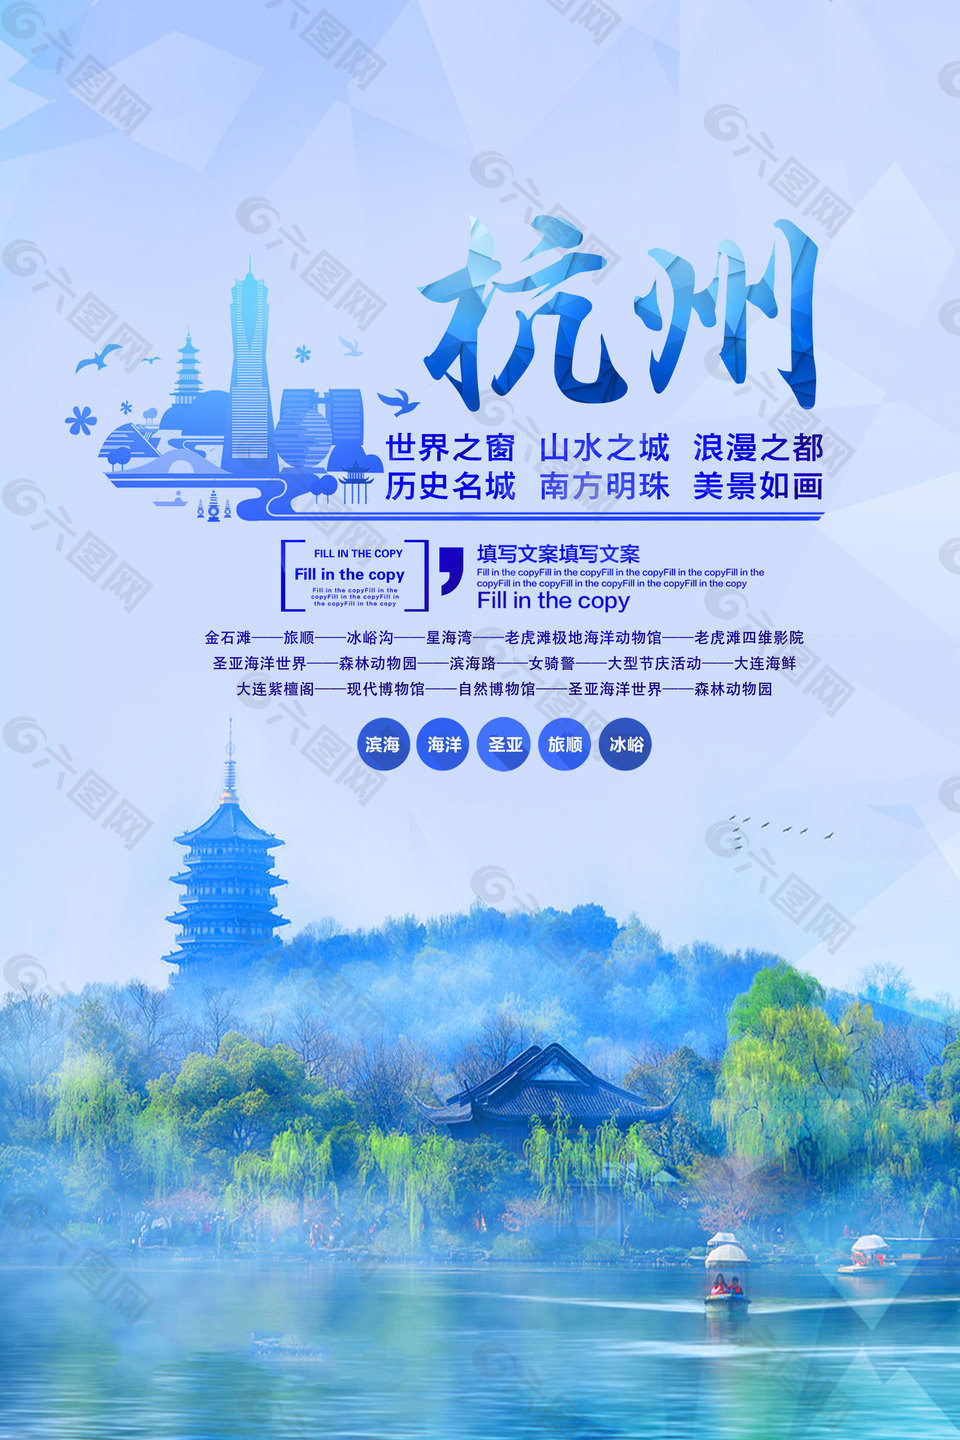 精美杭州旅游海报